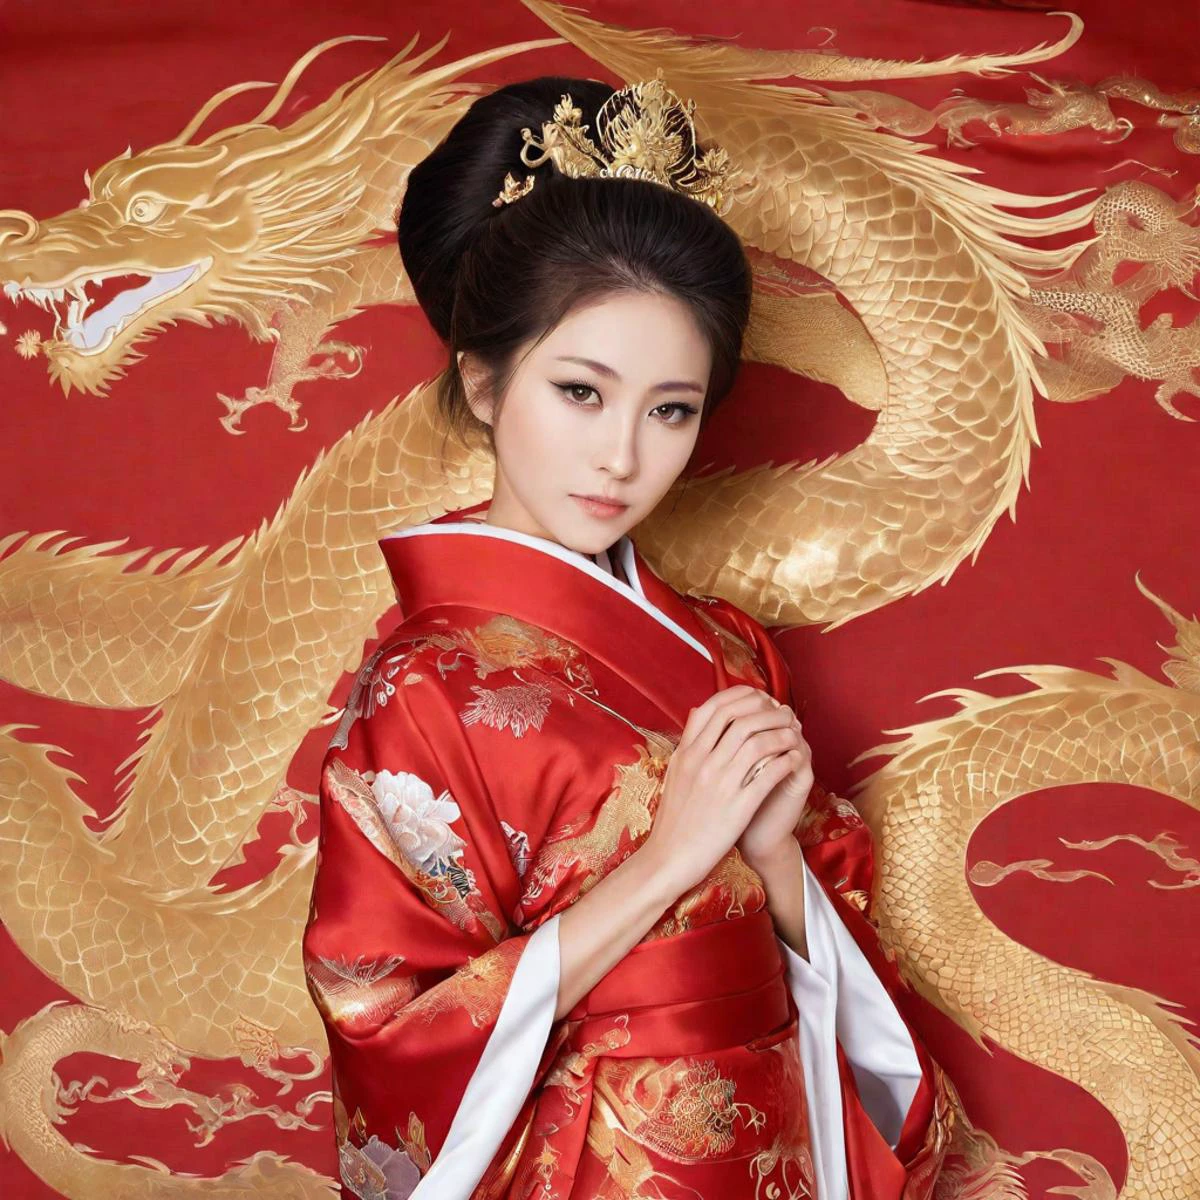 wunderschöne japanische Prinzessin in einem roten Seidenkimono mit goldenem Drachenmuster